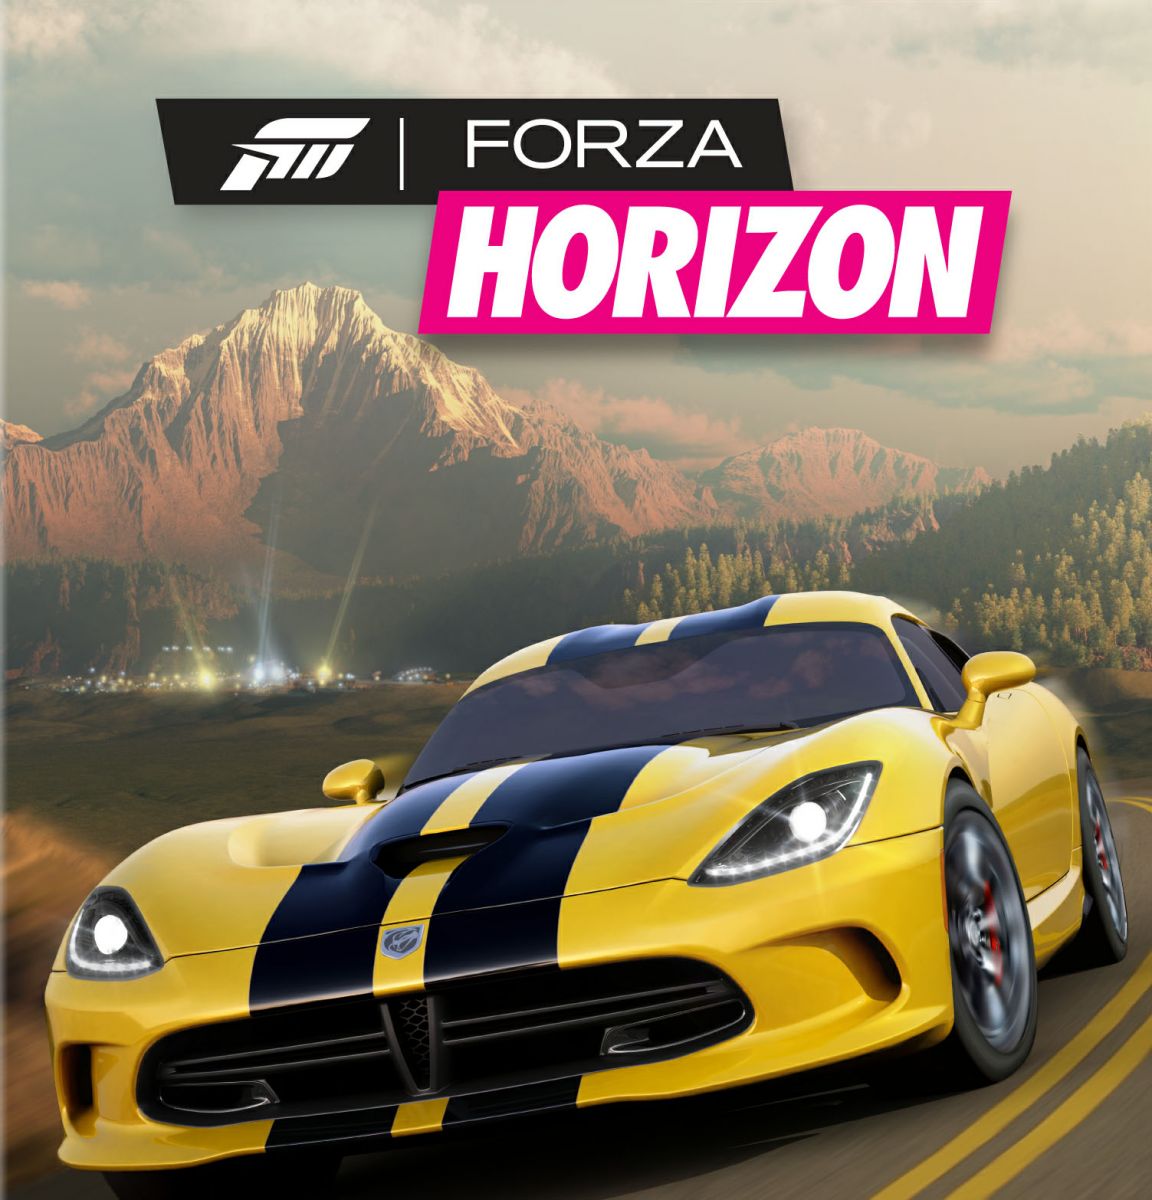 Forza+Horizon+box+art.jpg